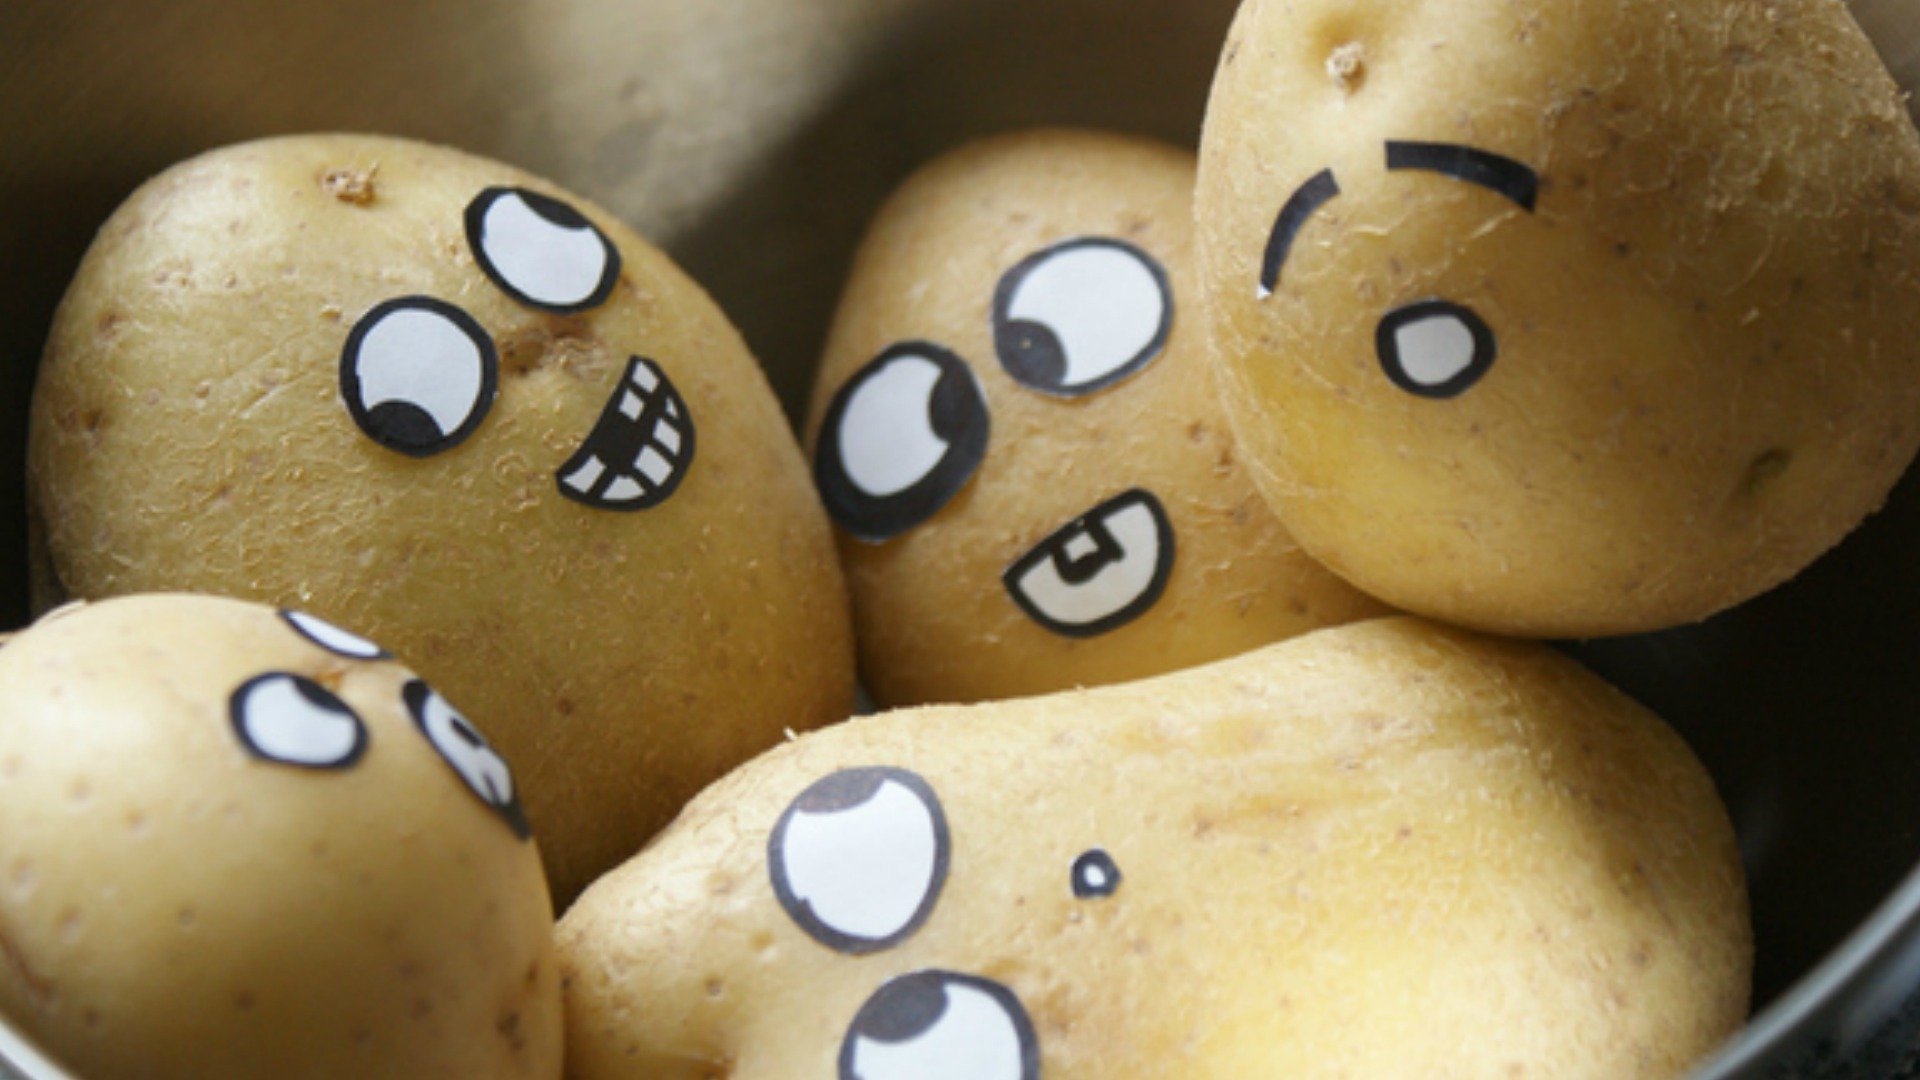 Картошка с глазками. Картофель. Картошка улыбается. Веселая картошка. Глазки картофеля.